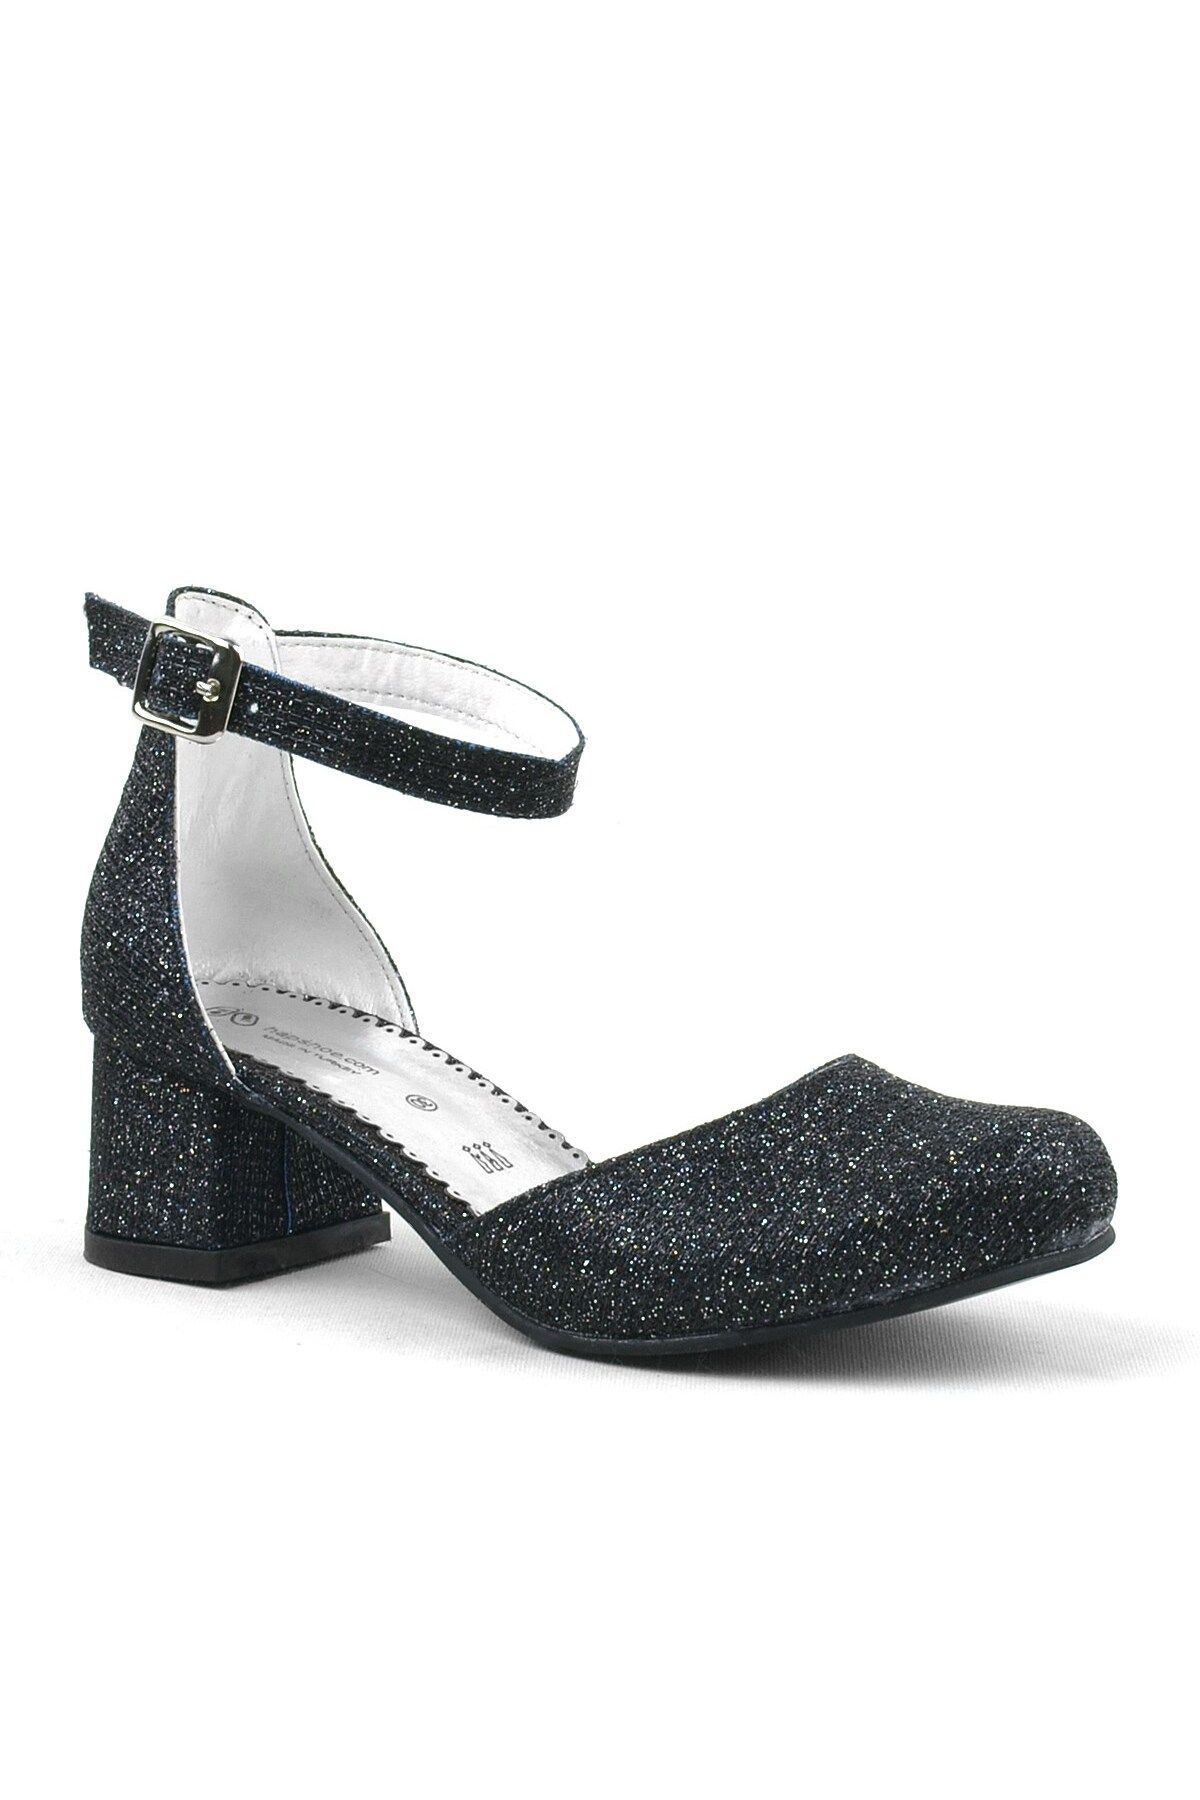 hapshoe Merida Siyah Simli Kalın Topuklu Kız Çocuk Topuklu Ayakkabı